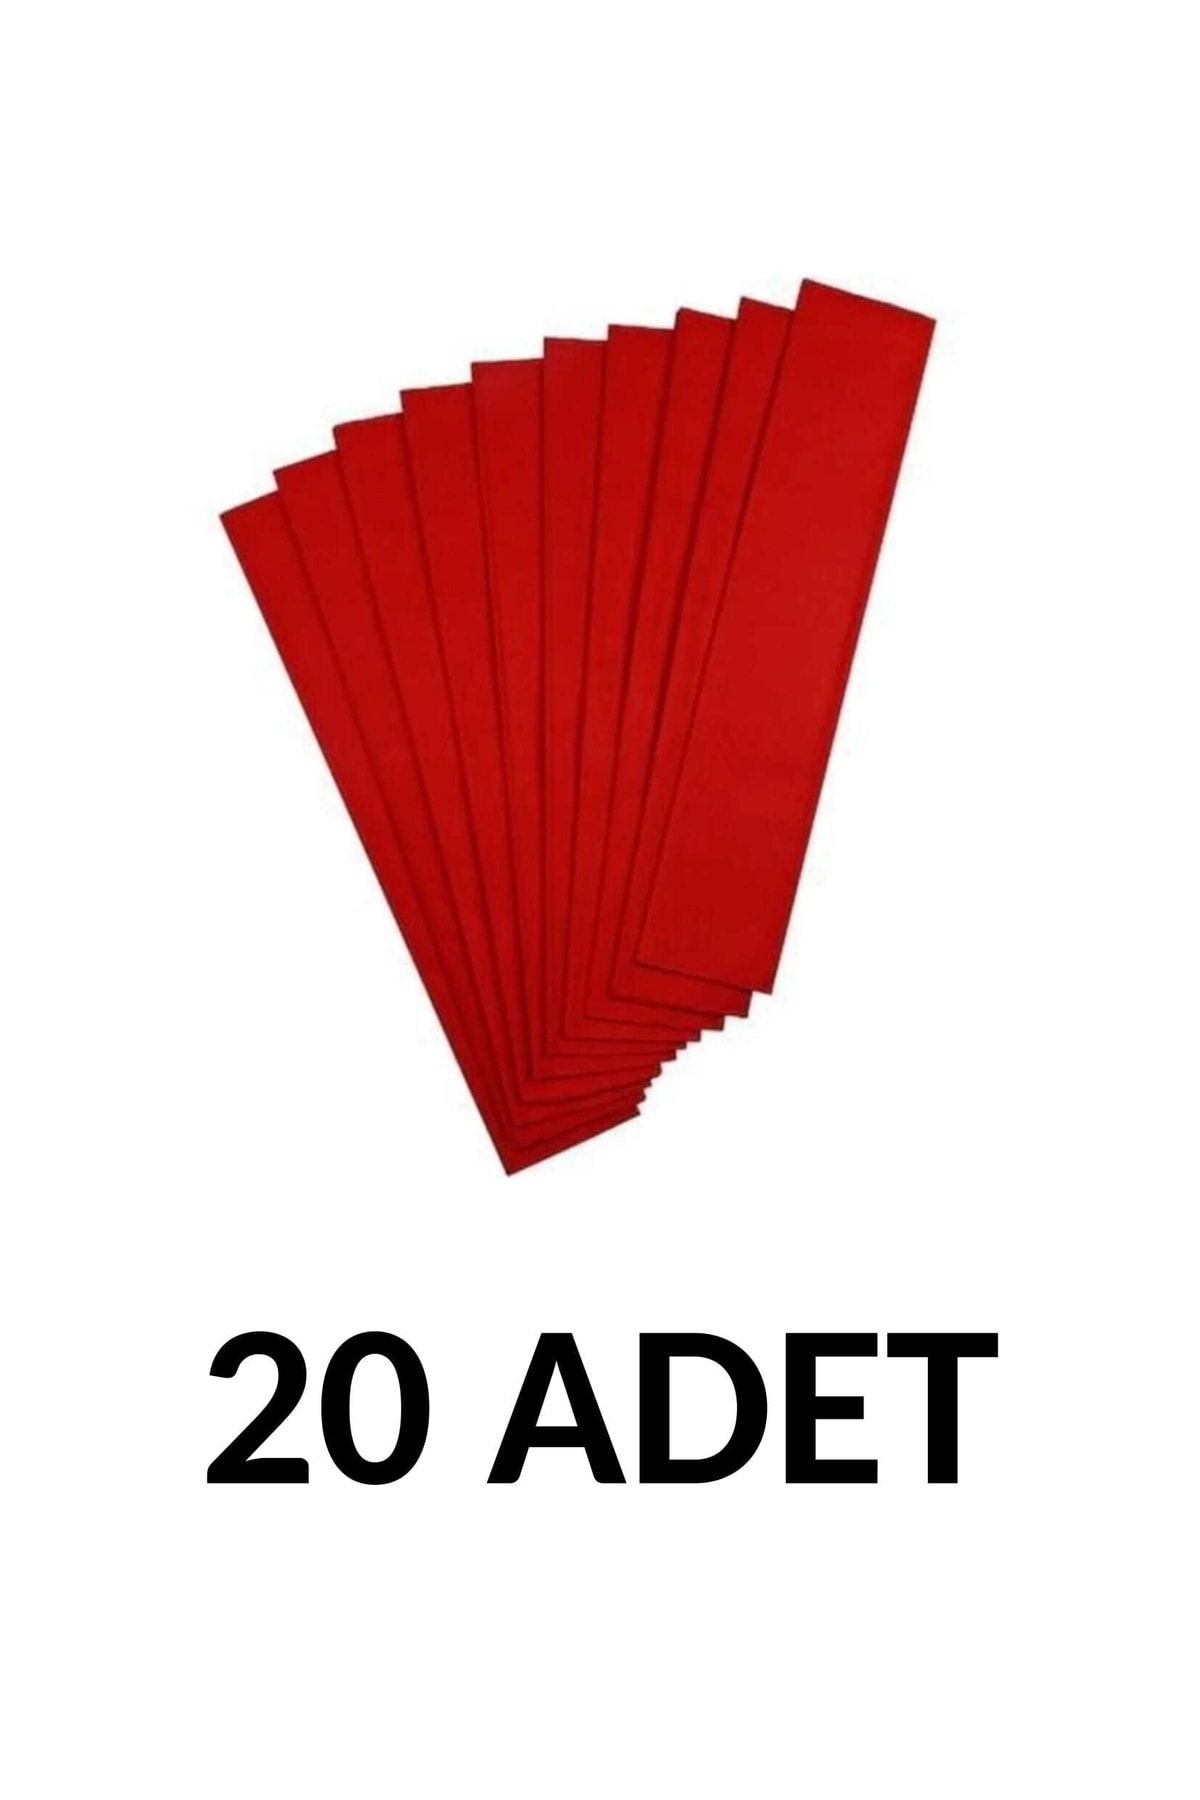 Ticon 20 Adet 50*200 Cm Kırmızı Renk Krapon Kağıdı